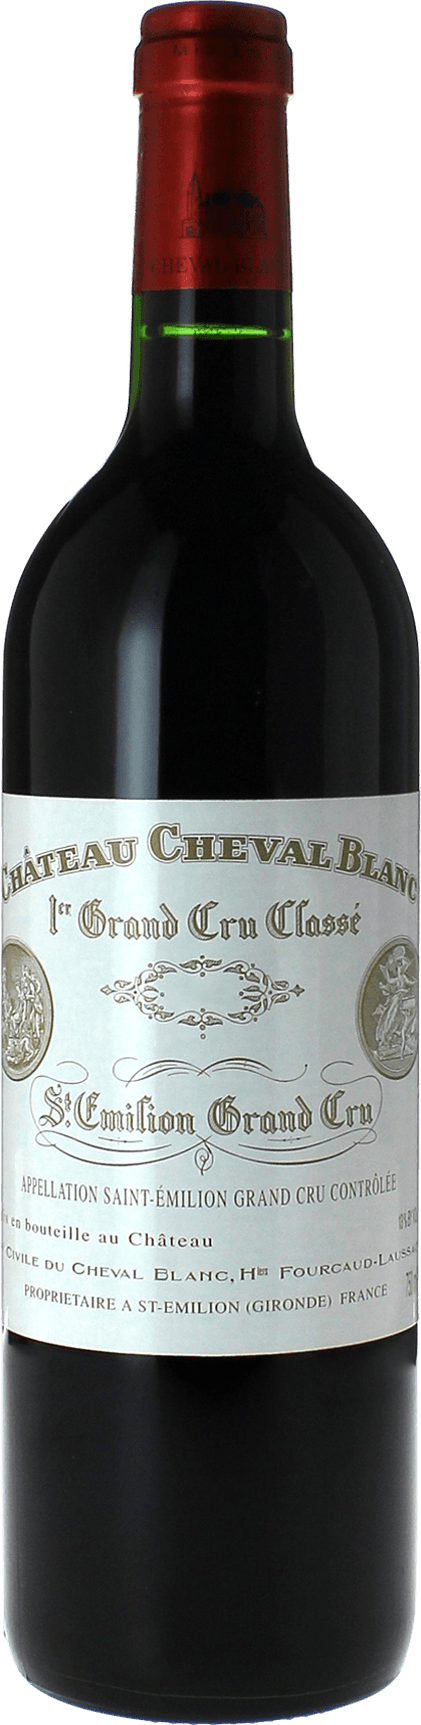 Cheval blanc 2016 1er Grand cru class A Saint-Emilion, Bordeaux rouge